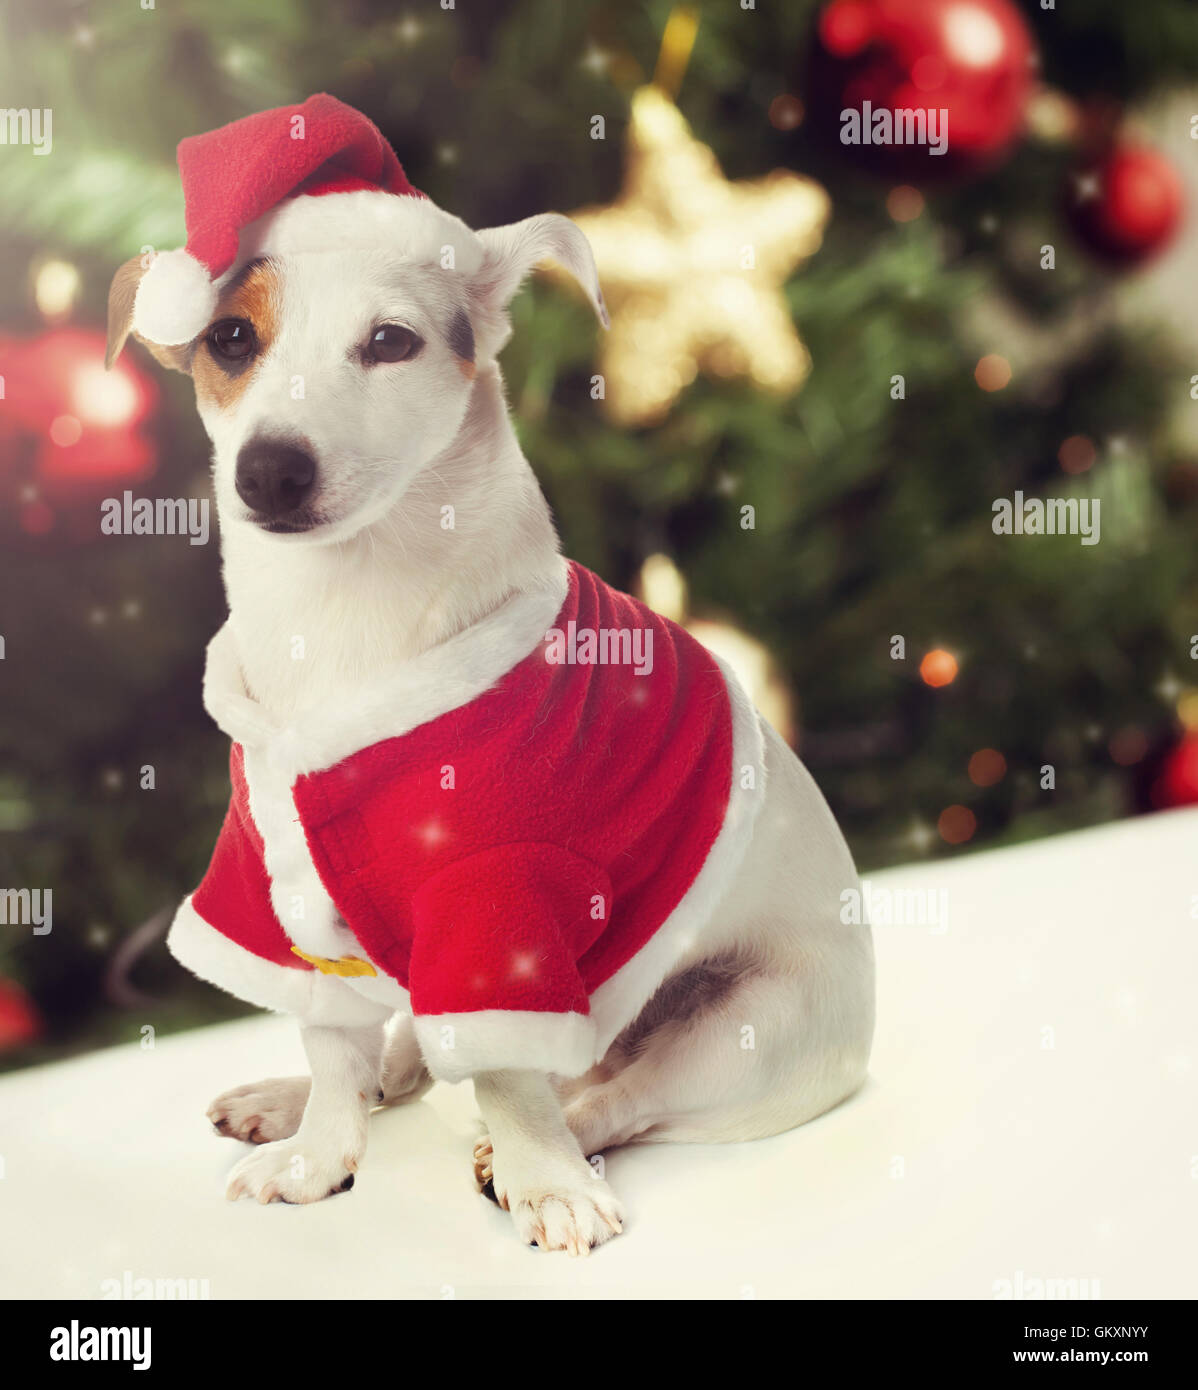 Cane Jack Russell vestiti da Babbo Natale in tema natalizio Foto Stock